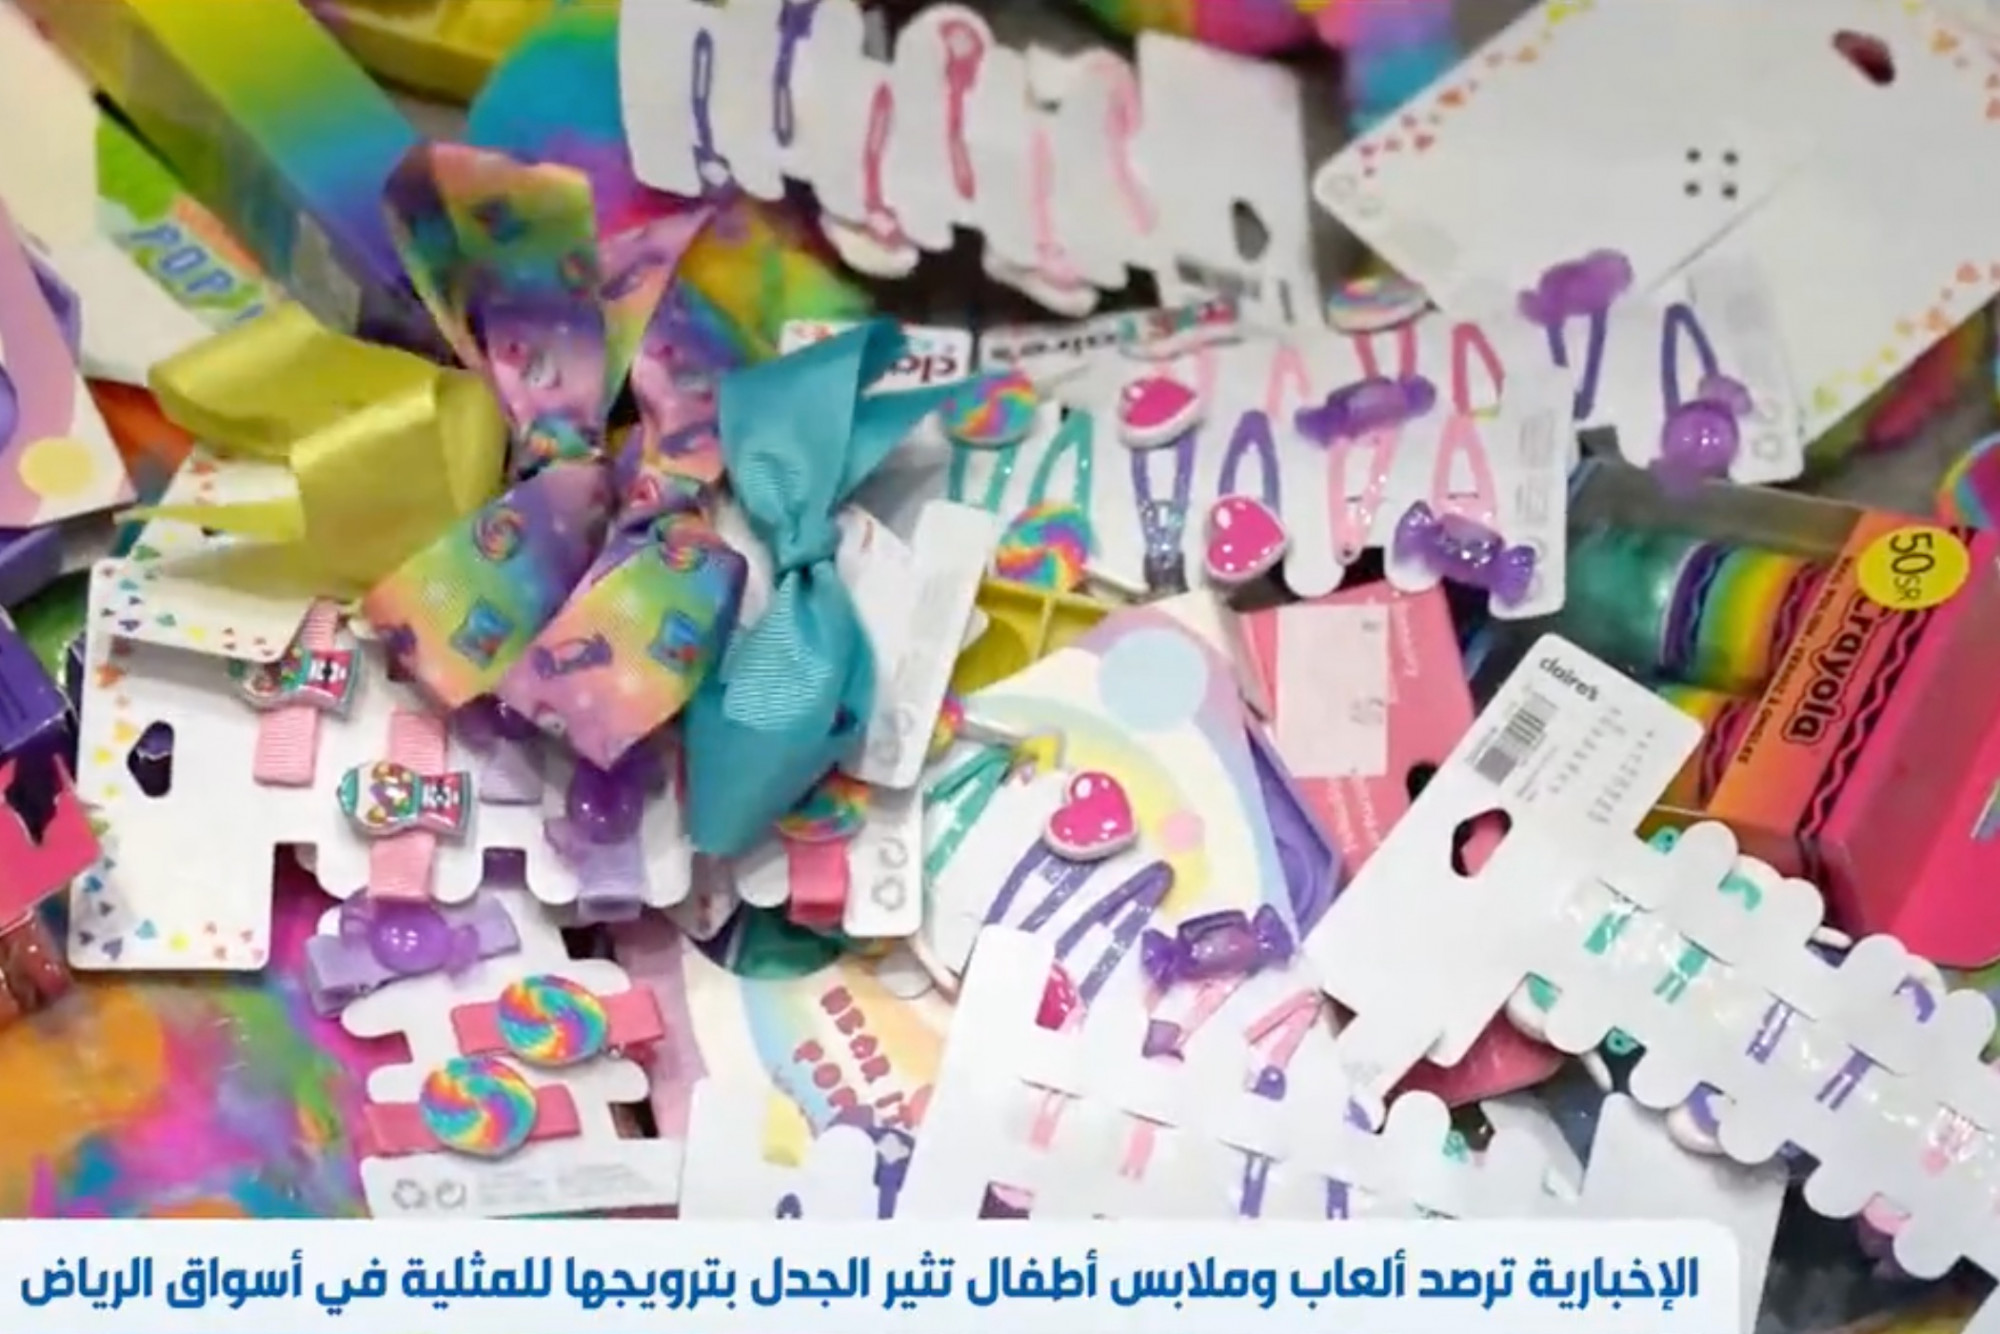 Szaúd-Arábiában minden szivárványszínű gyerekholmit elkoboznak, mondván, hogy homoszexualitásra buzdítanak